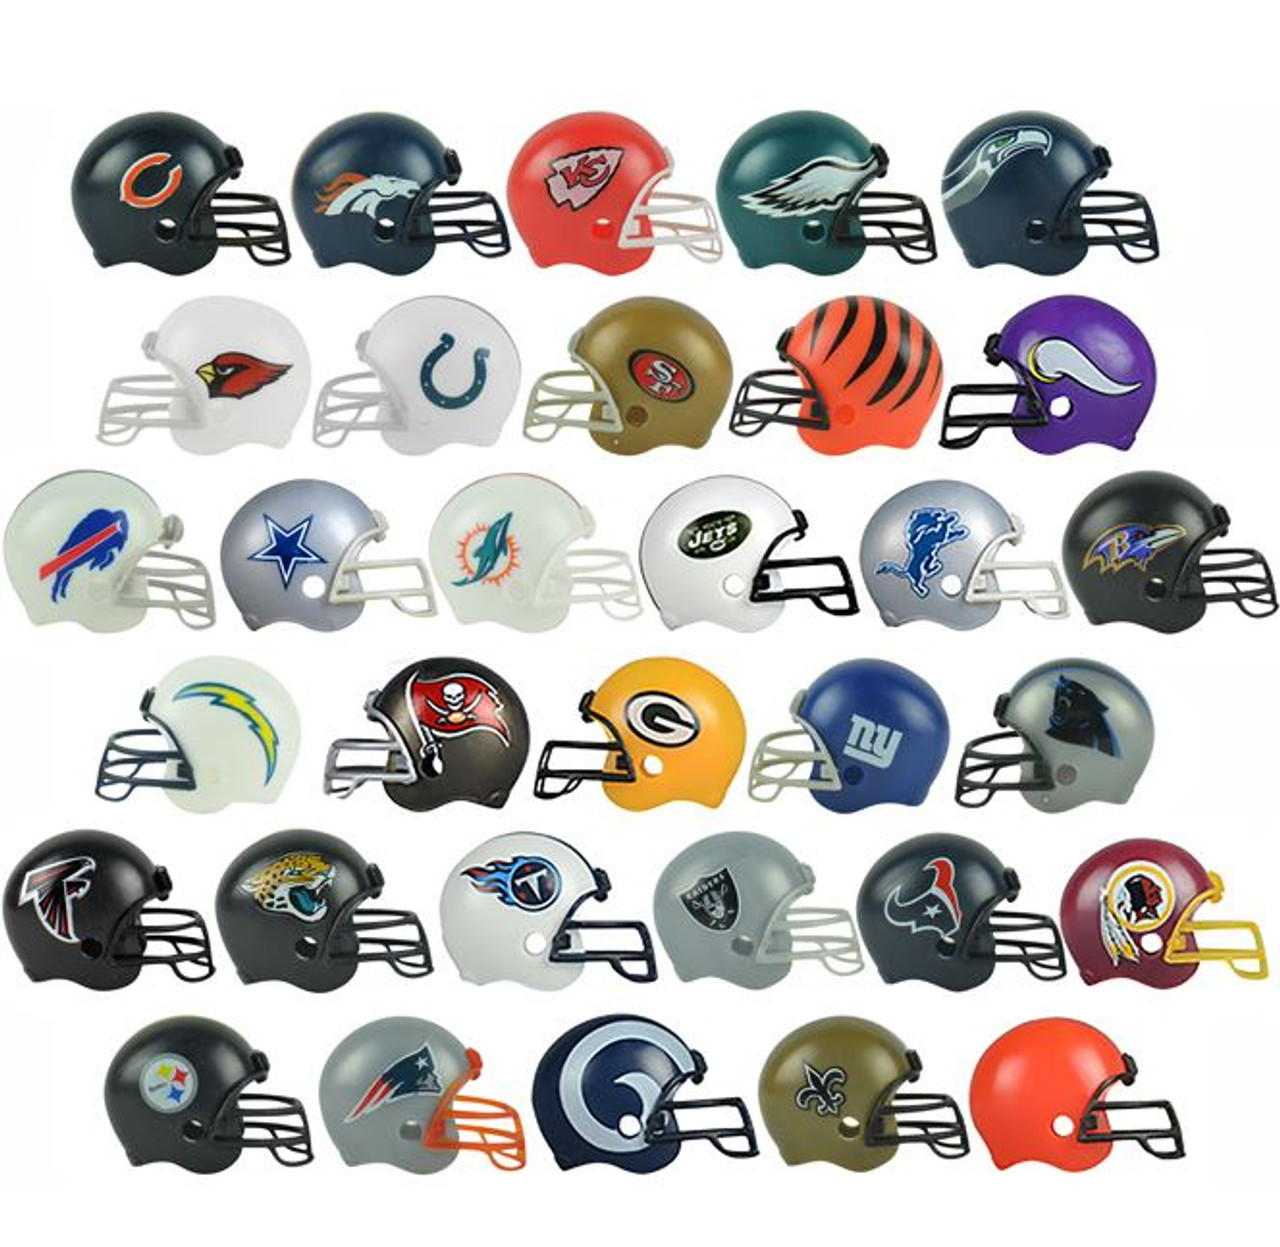 NFL Helmets Full Set - GumballStuff: Bulk Vending Supplies